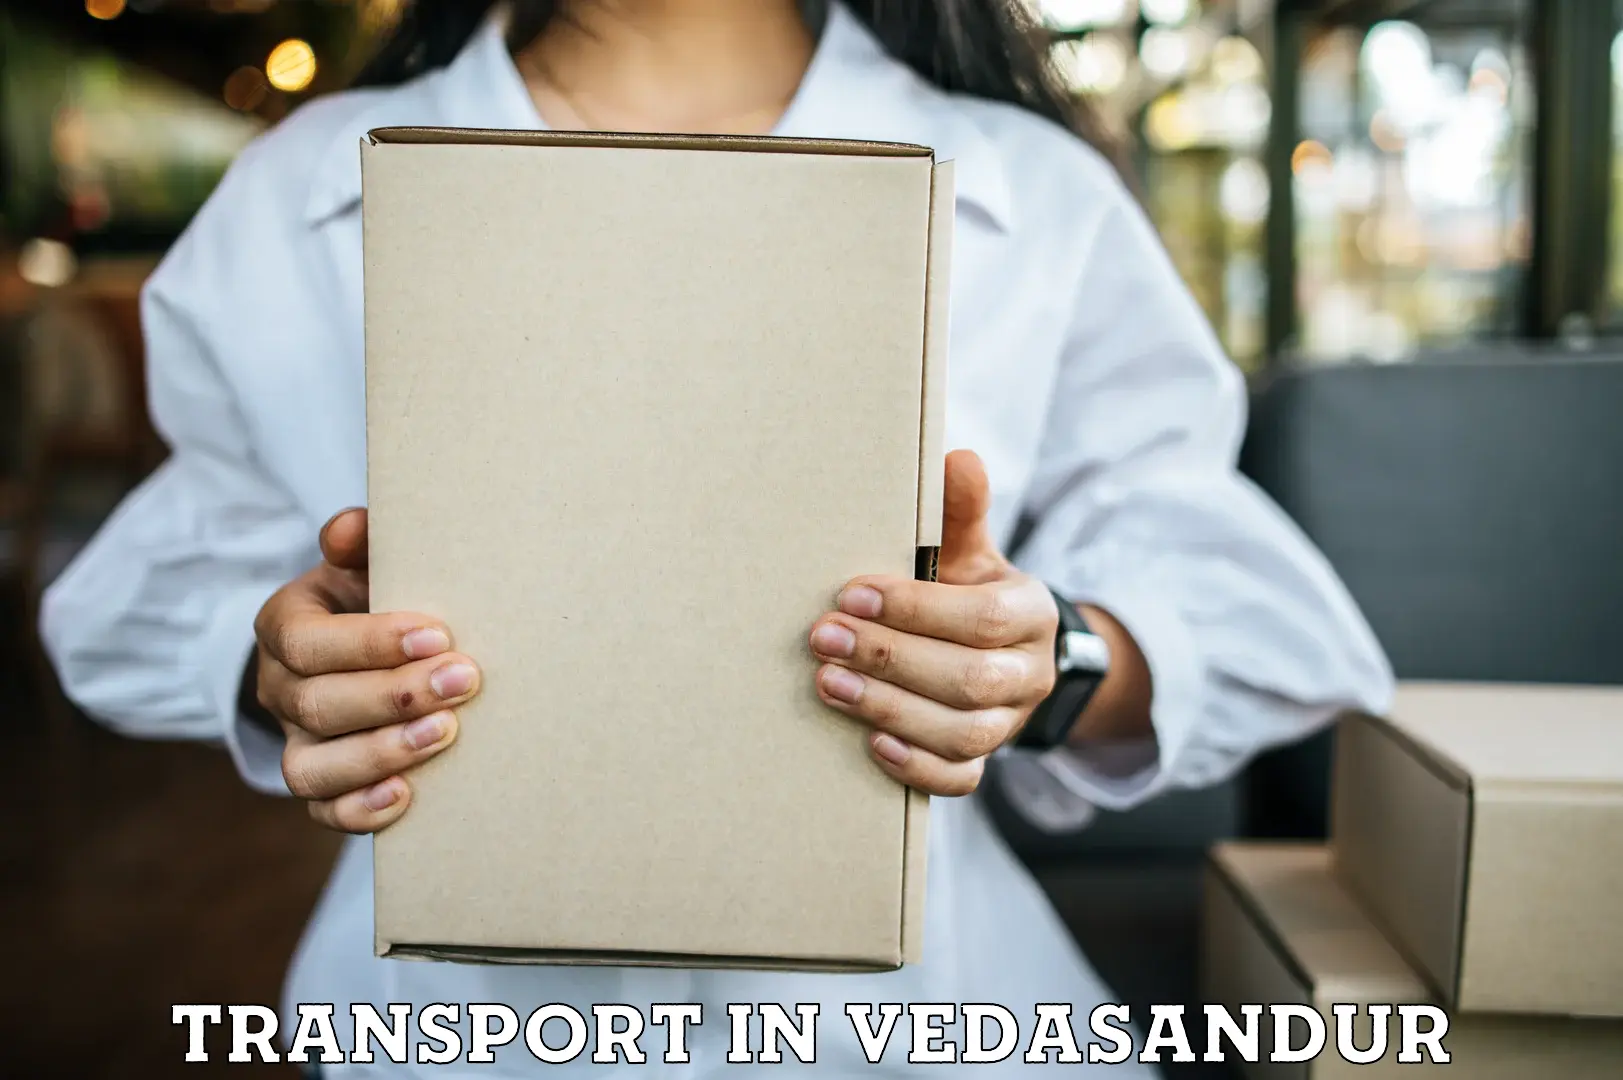 Cargo transportation services in Vedasandur